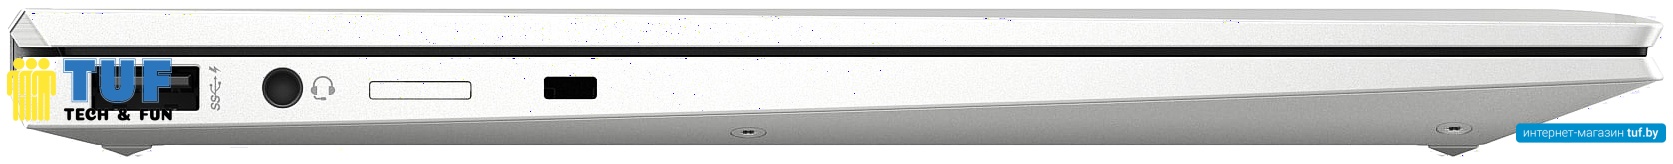 Ноутбук 2-в-1 HP EliteBook x360 1030 G7 204J3EA